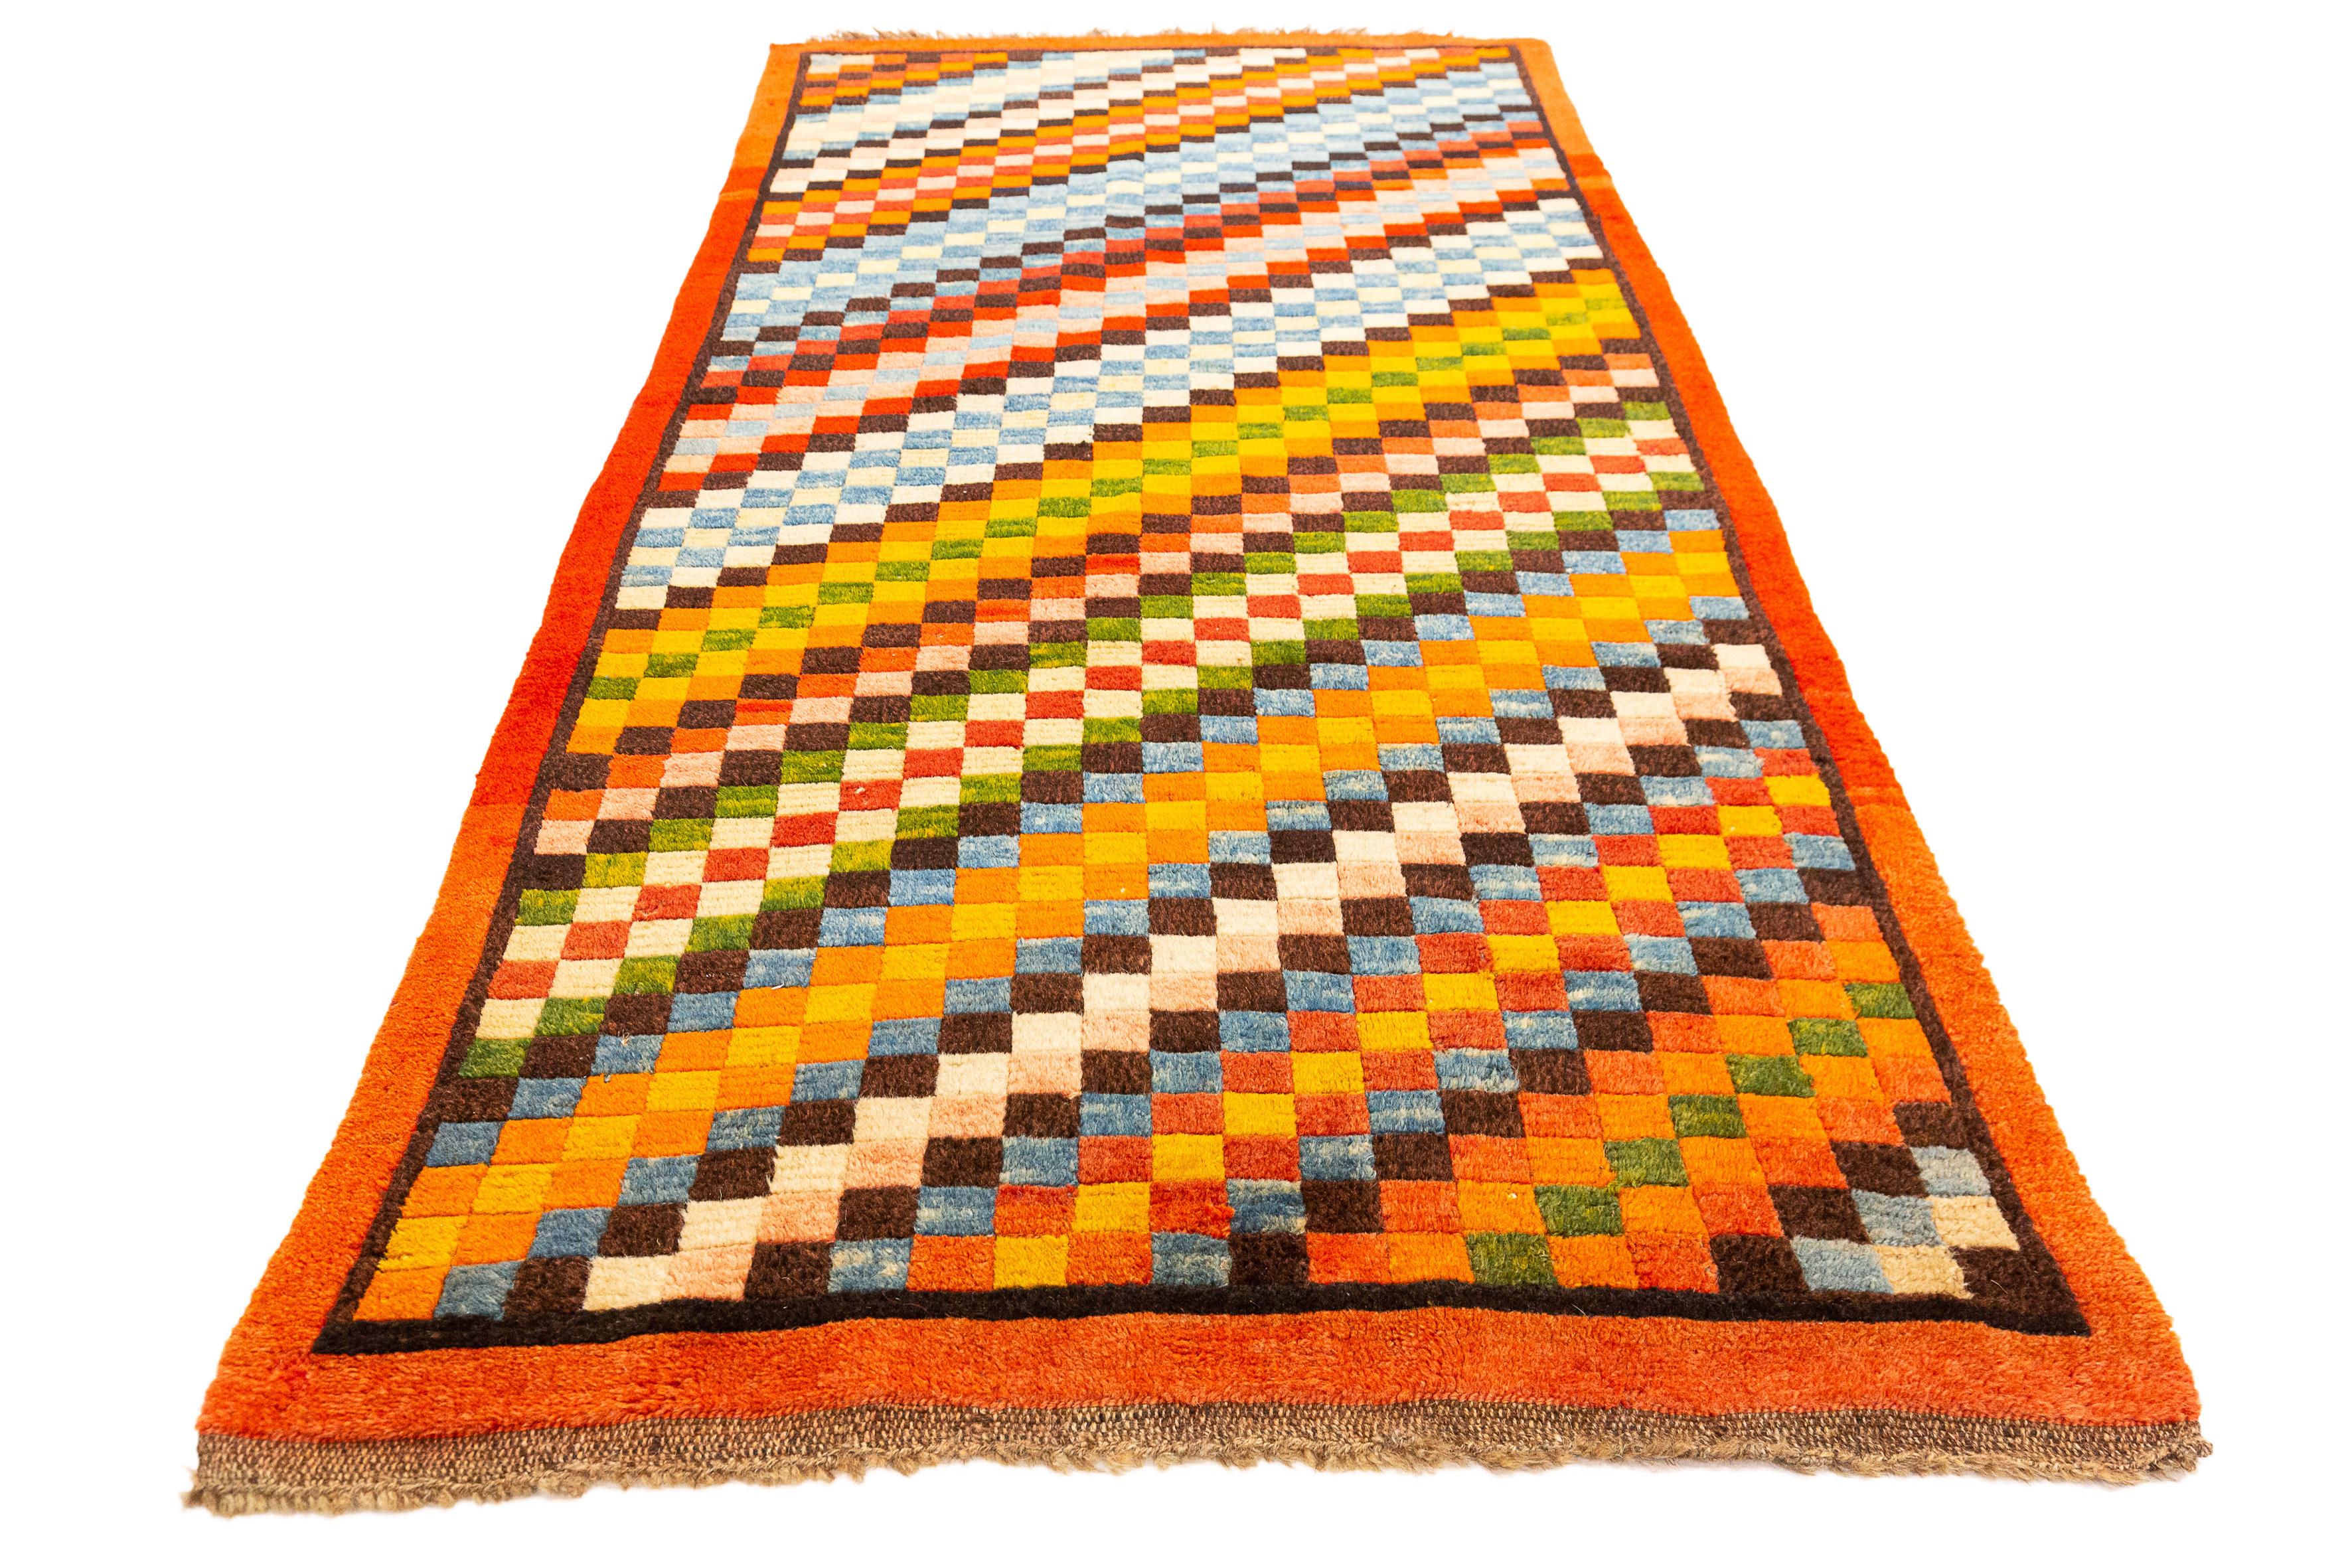 Dieser Teppich ist ein lebhaftes Beispiel tibetischer Handwerkskunst mit einem kühnen, pixelartigen Schachbrettmuster, das ein Gefühl von Tiefe und Bewegung vermittelt. Das Design besteht aus einer Reihe von Quadraten in einer Vielzahl von Farben,